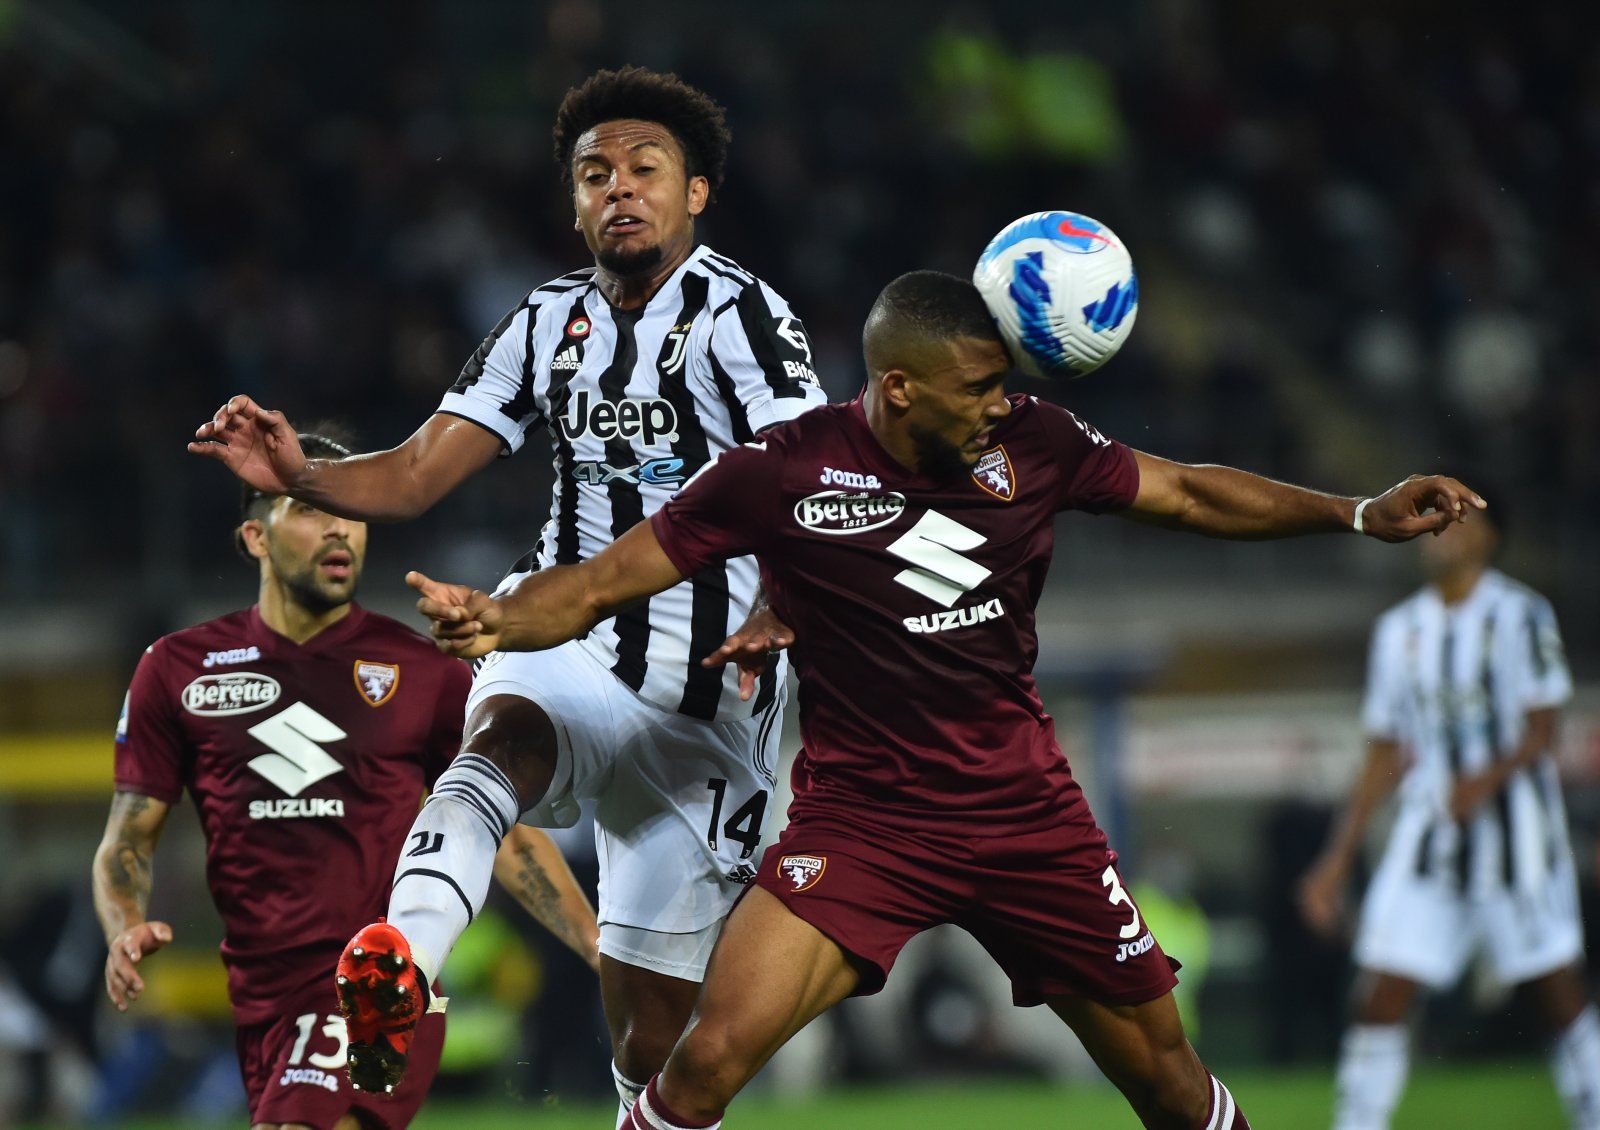 Juventus 2-1 Ferencvarosi TC: Juve take down visitors on late